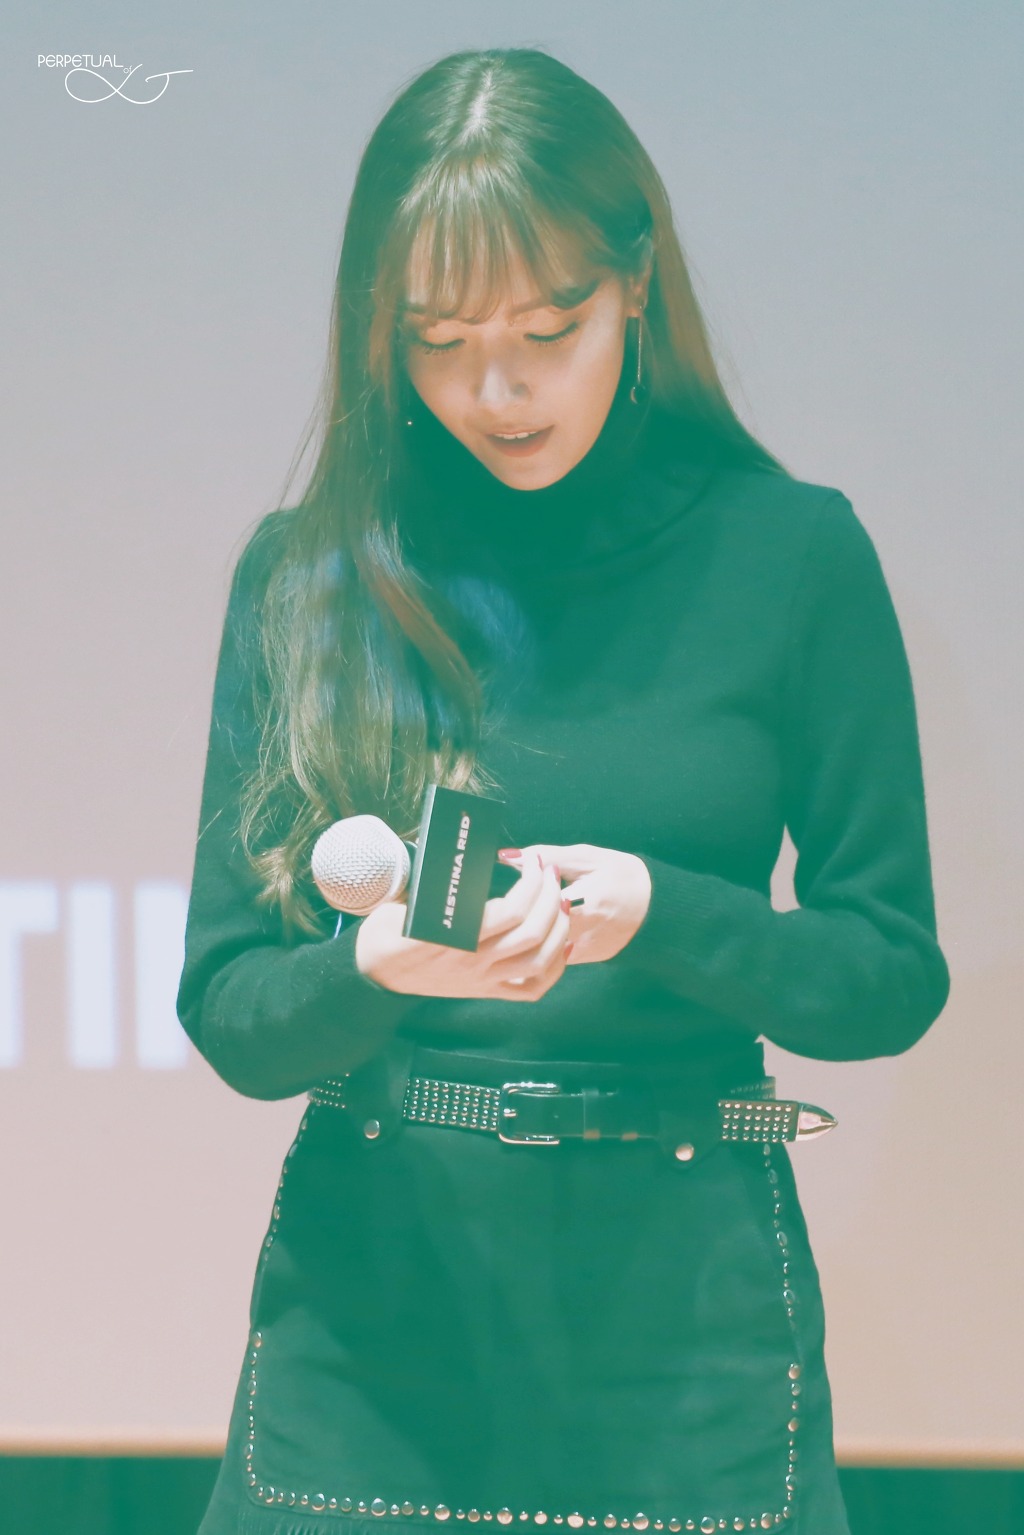 [PIC][07-11-2015]Jessica tham dự buổi Fansign cho dòng mỹ phẩm "J.ESTINA RED" tại "Myeongdong Lotte Cinema" vào chiều nay 230E8A39563E43EB2361D9